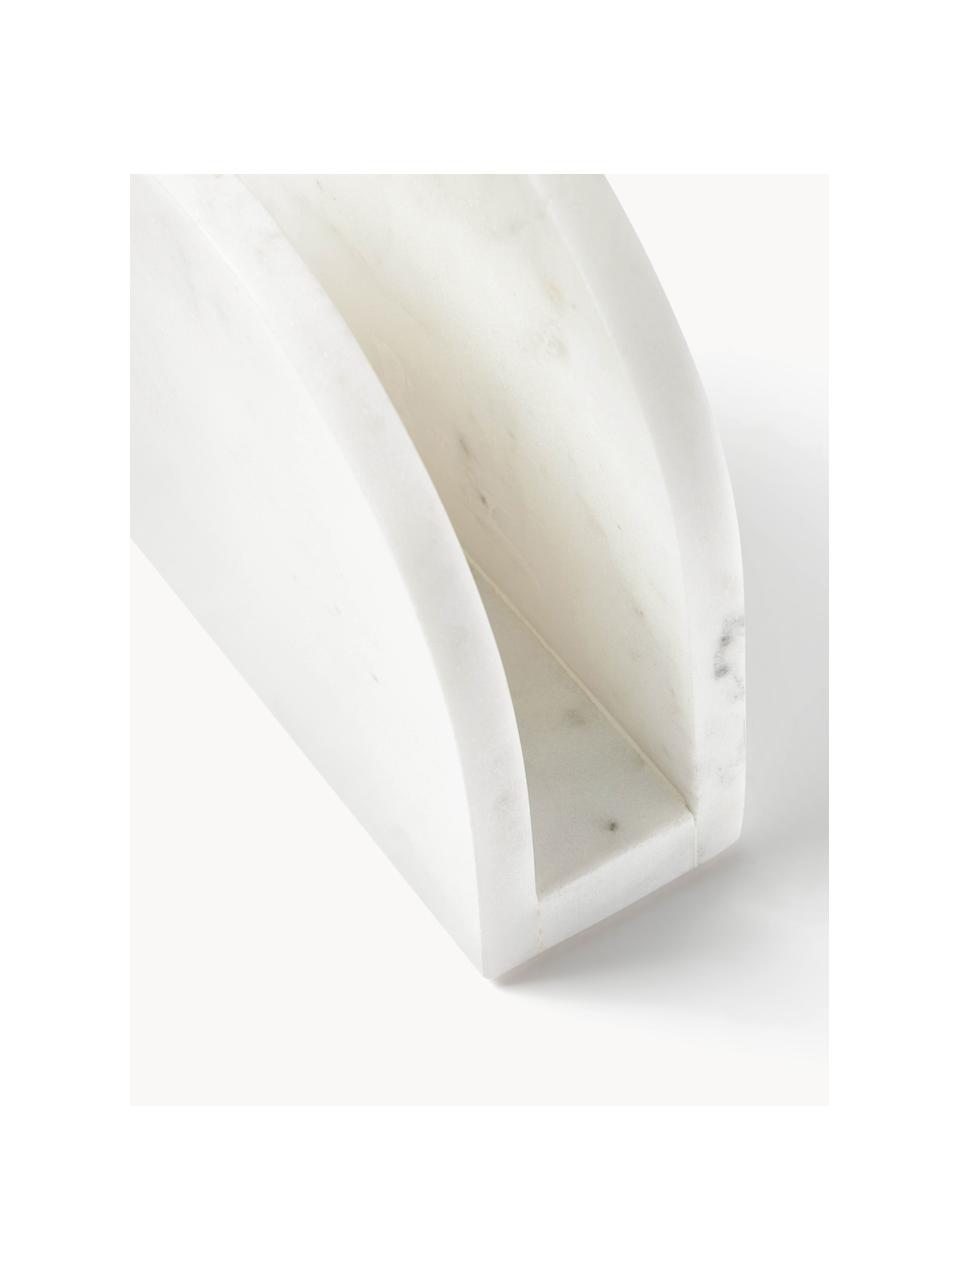 Stojak na serwetki z marmuru Agata, Marmur

Marmur jest materiałem pochodzenia naturalnego, dlatego produkt może nieznacznie różnić się kolorem i kształtem od przedstawionego na zdjęciu, Biały, marmurowy, S 15 x W 14 cm